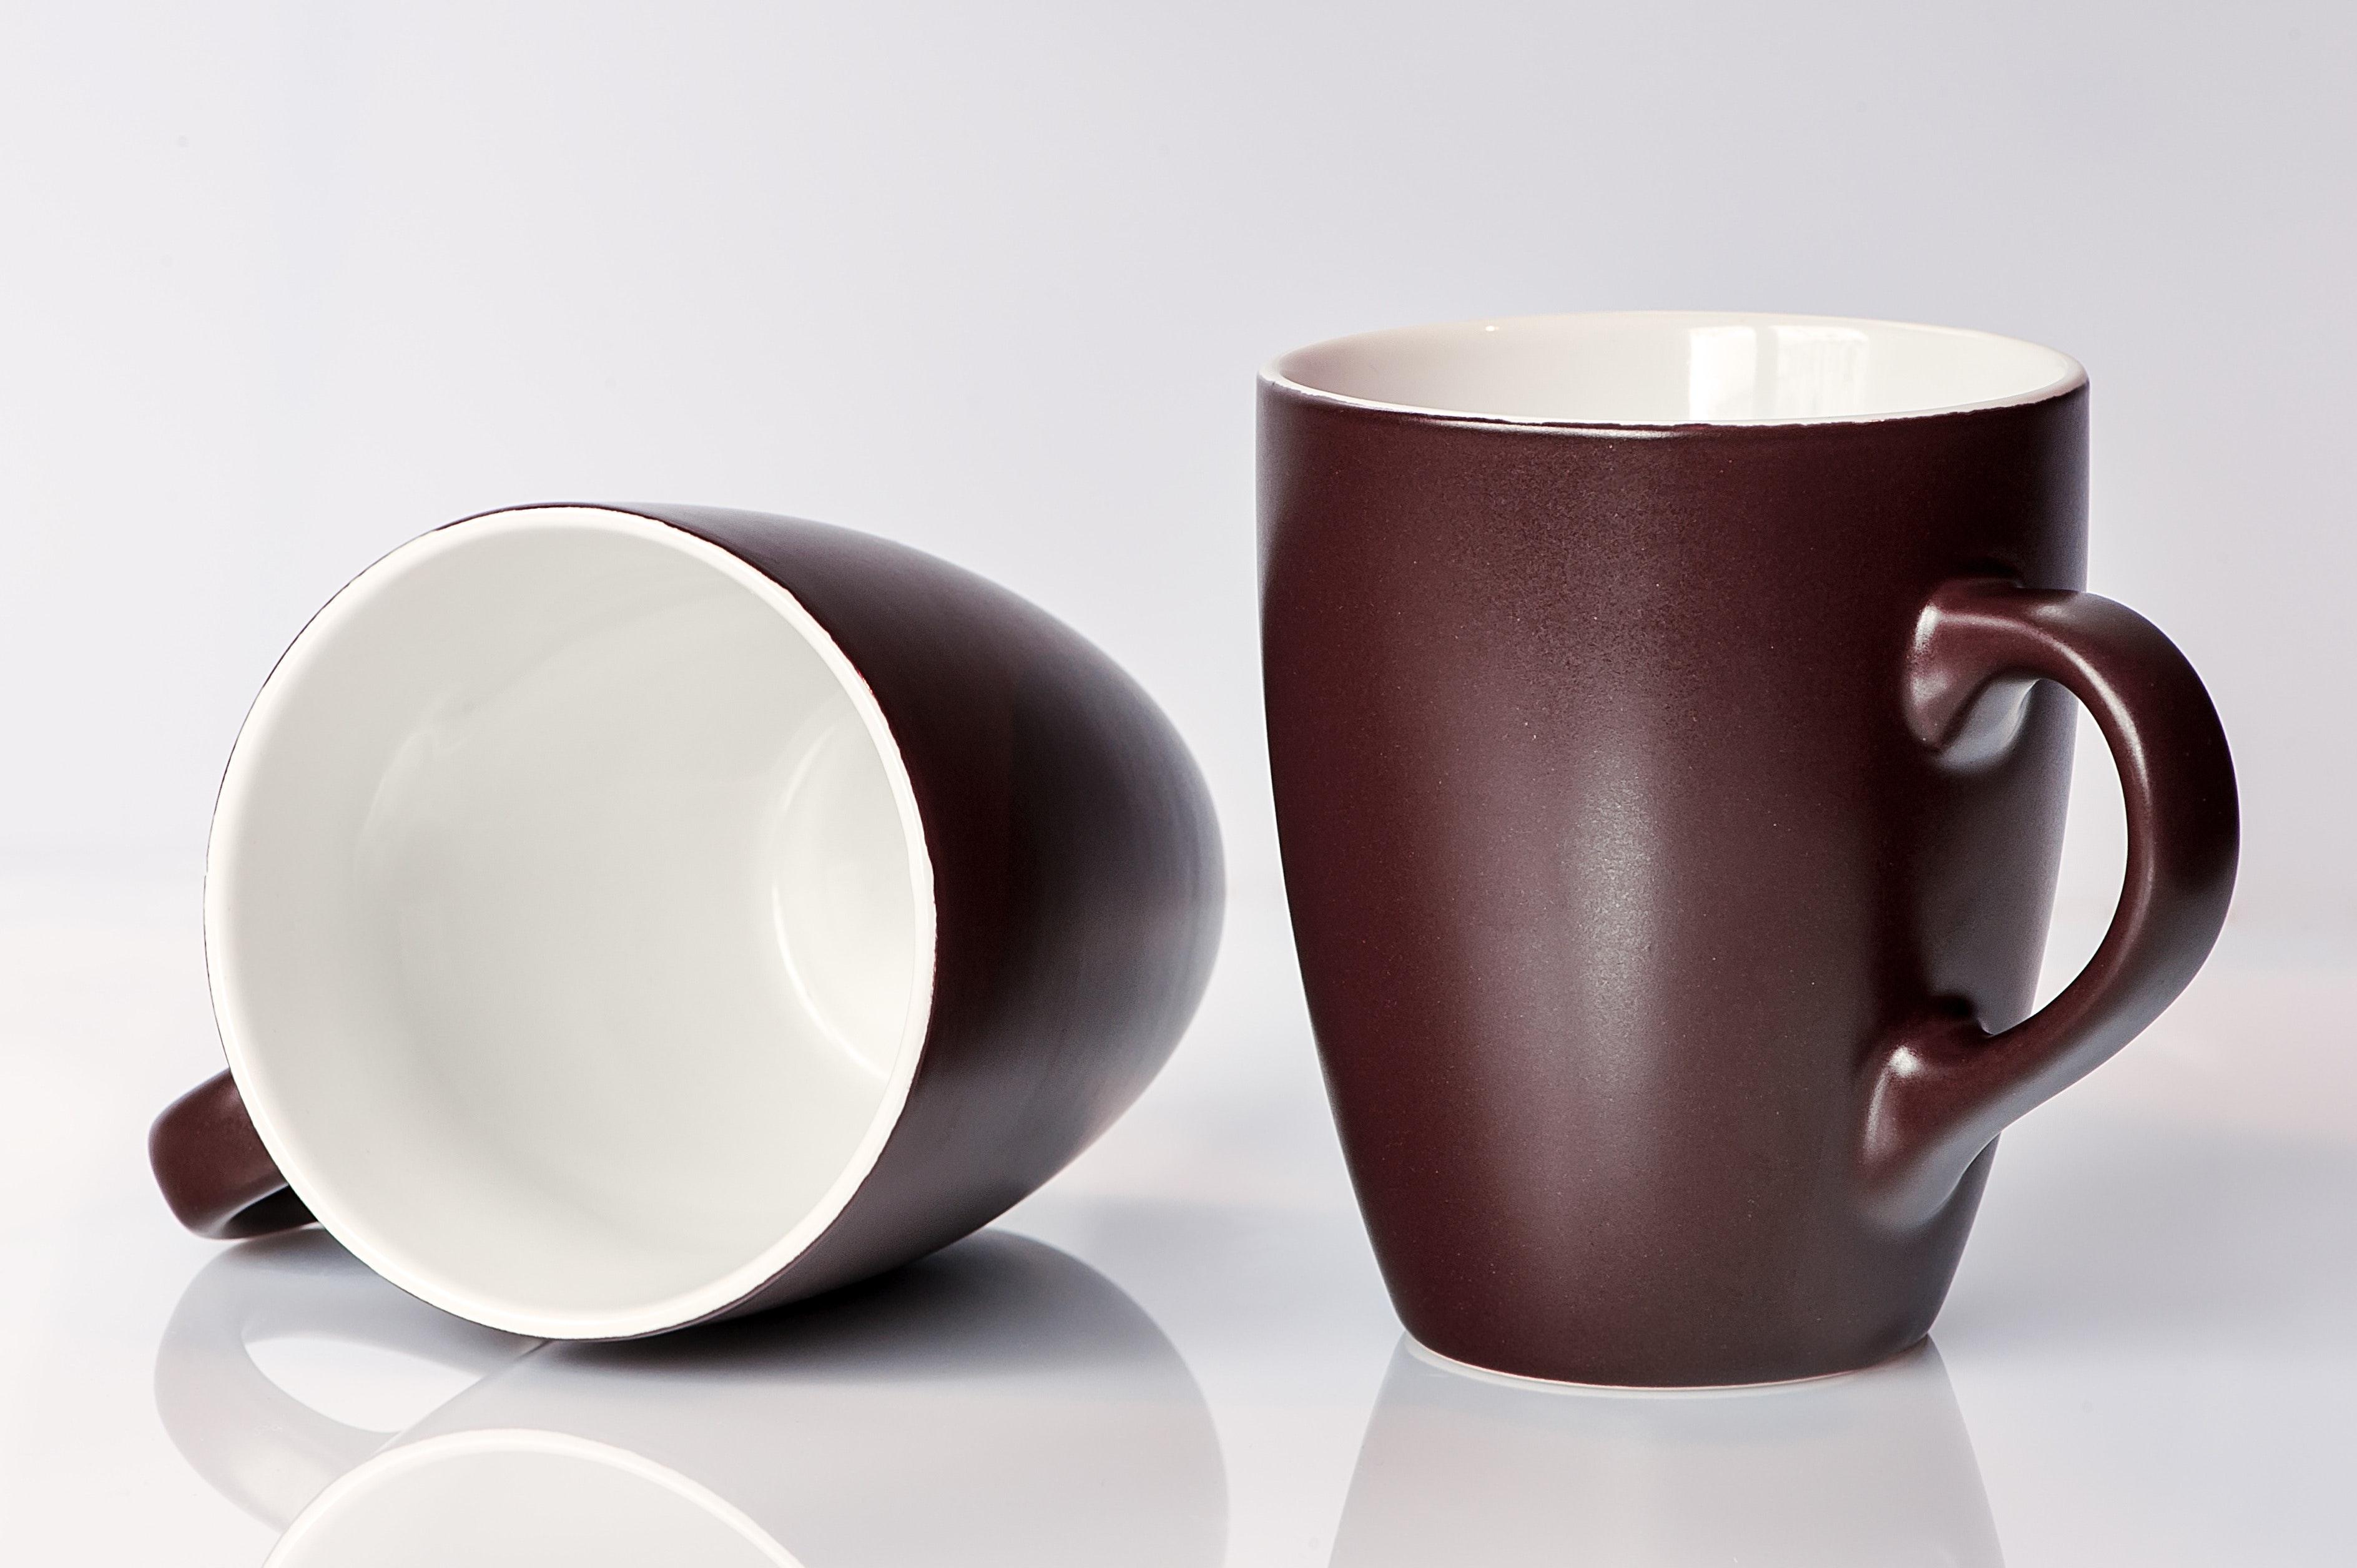  How Do You Glue A Ceramic Mug Back Together 